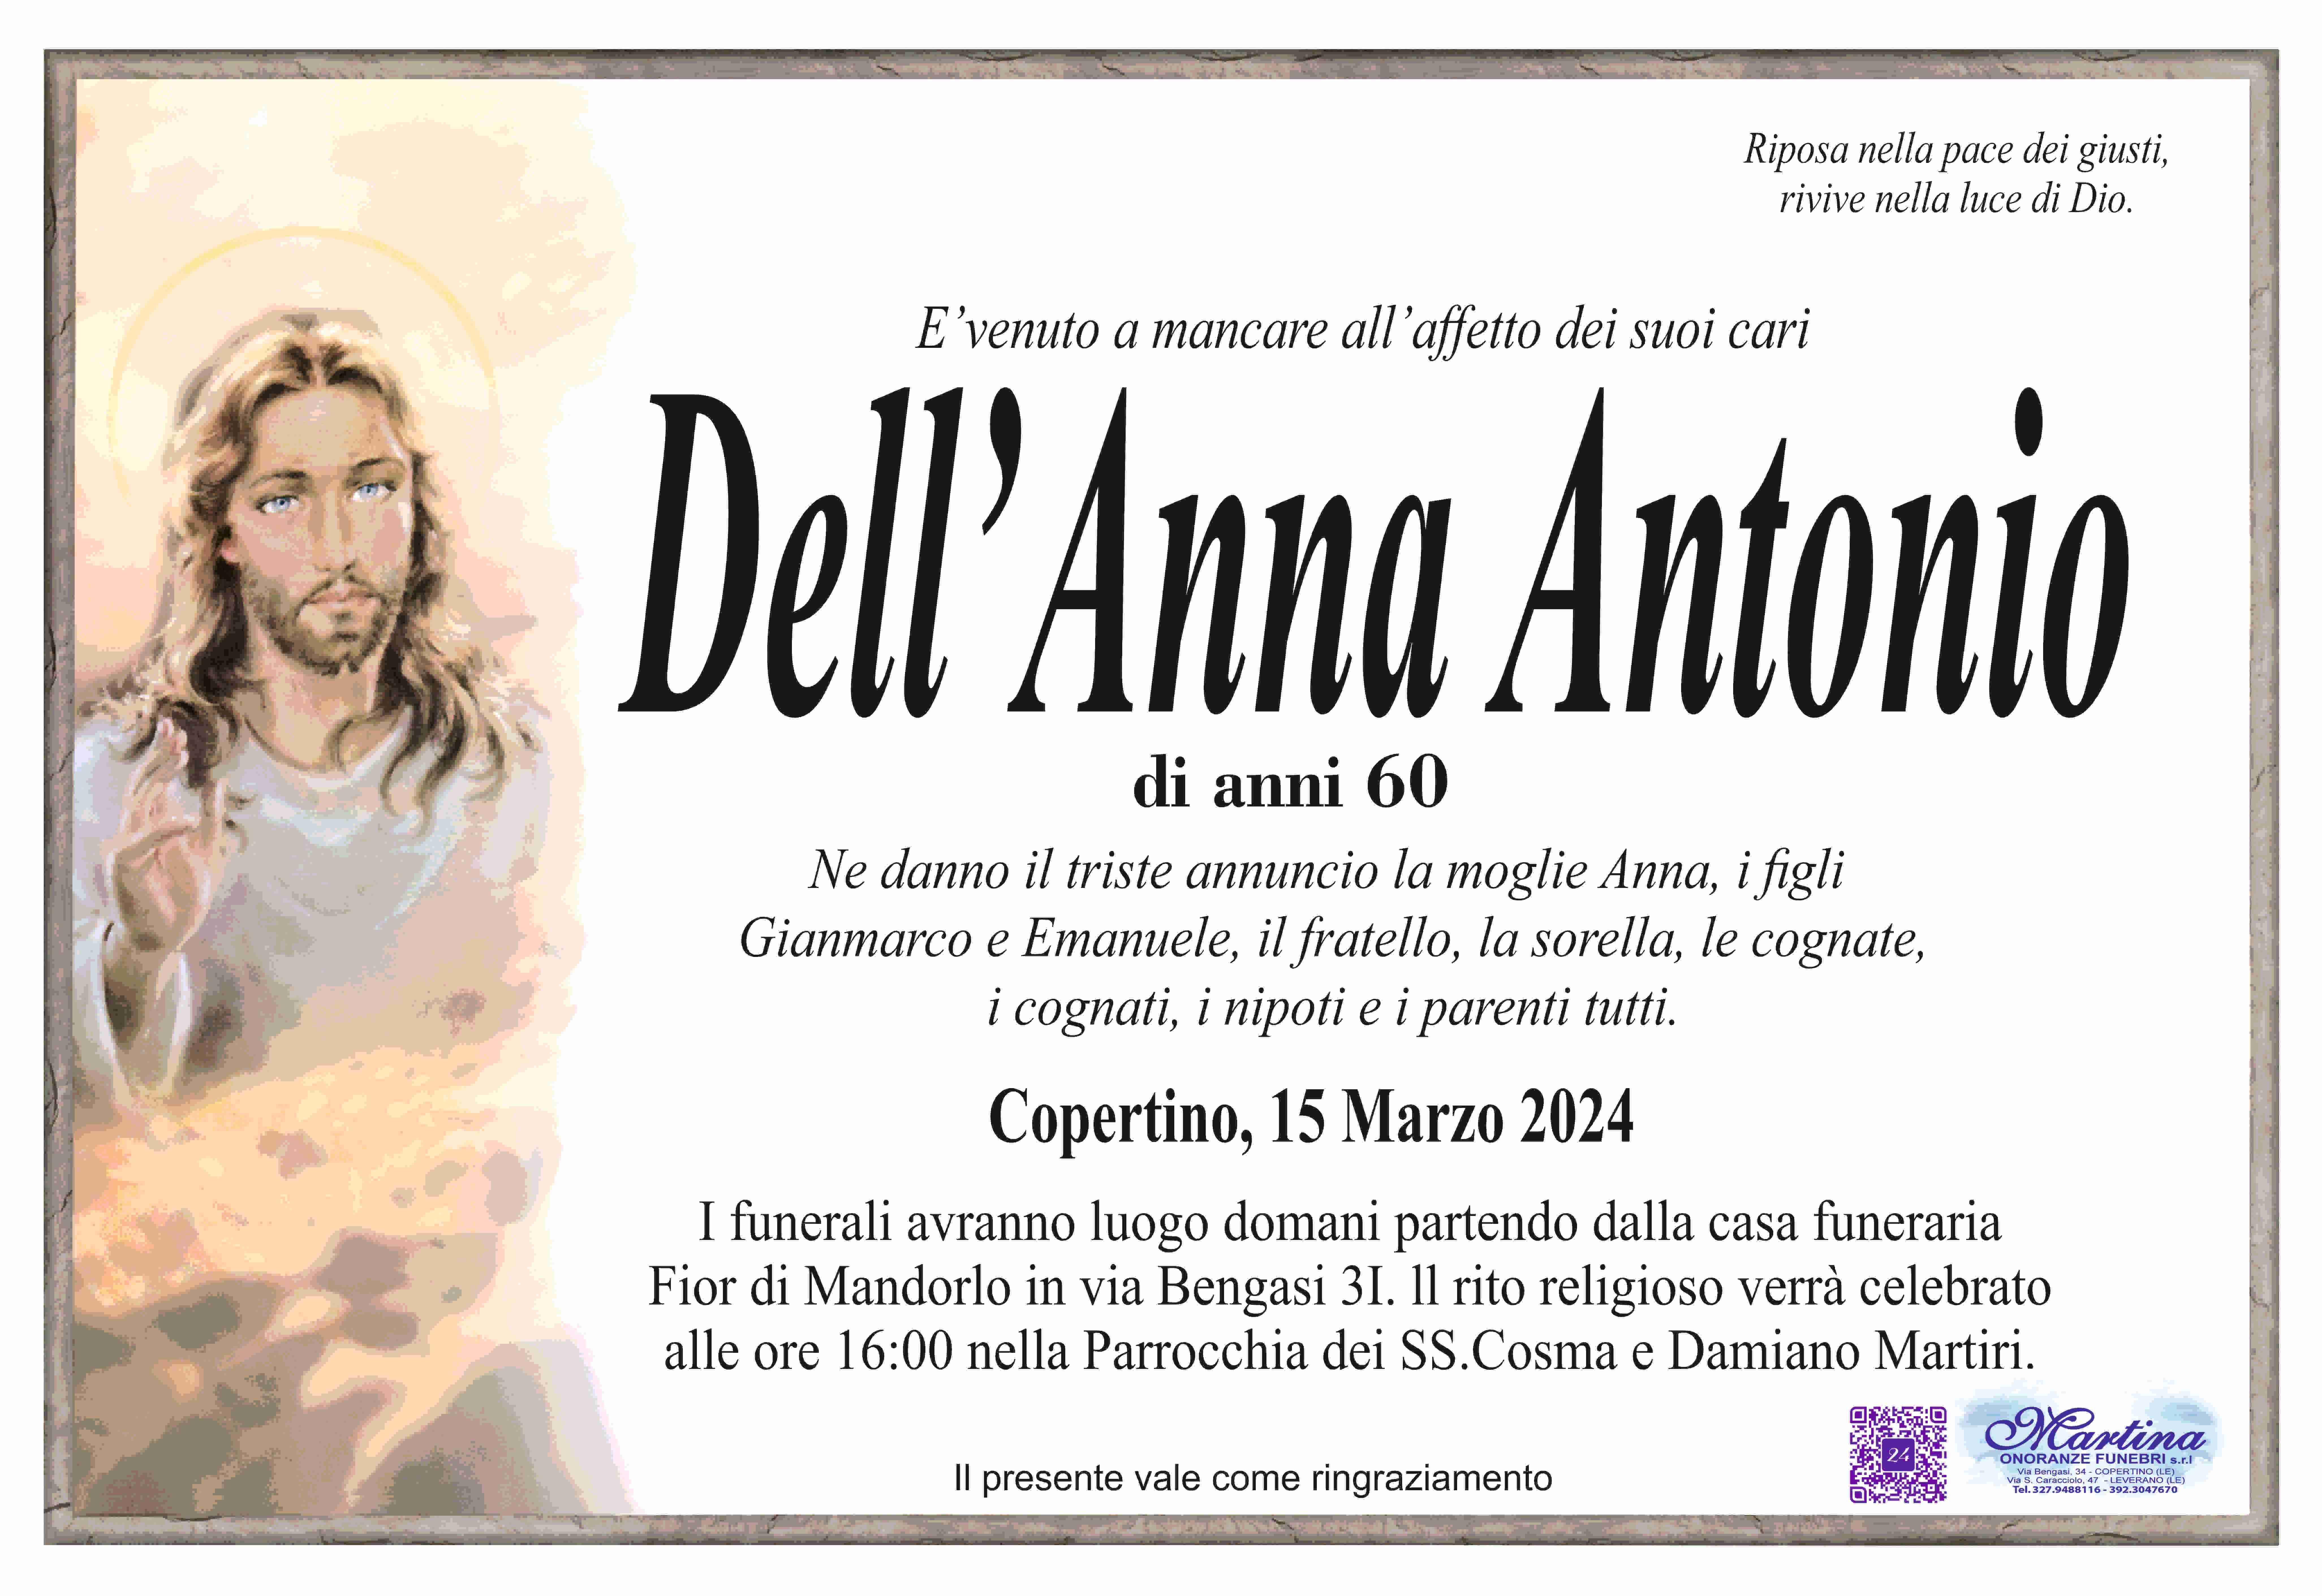 Antonio Dell'Anna